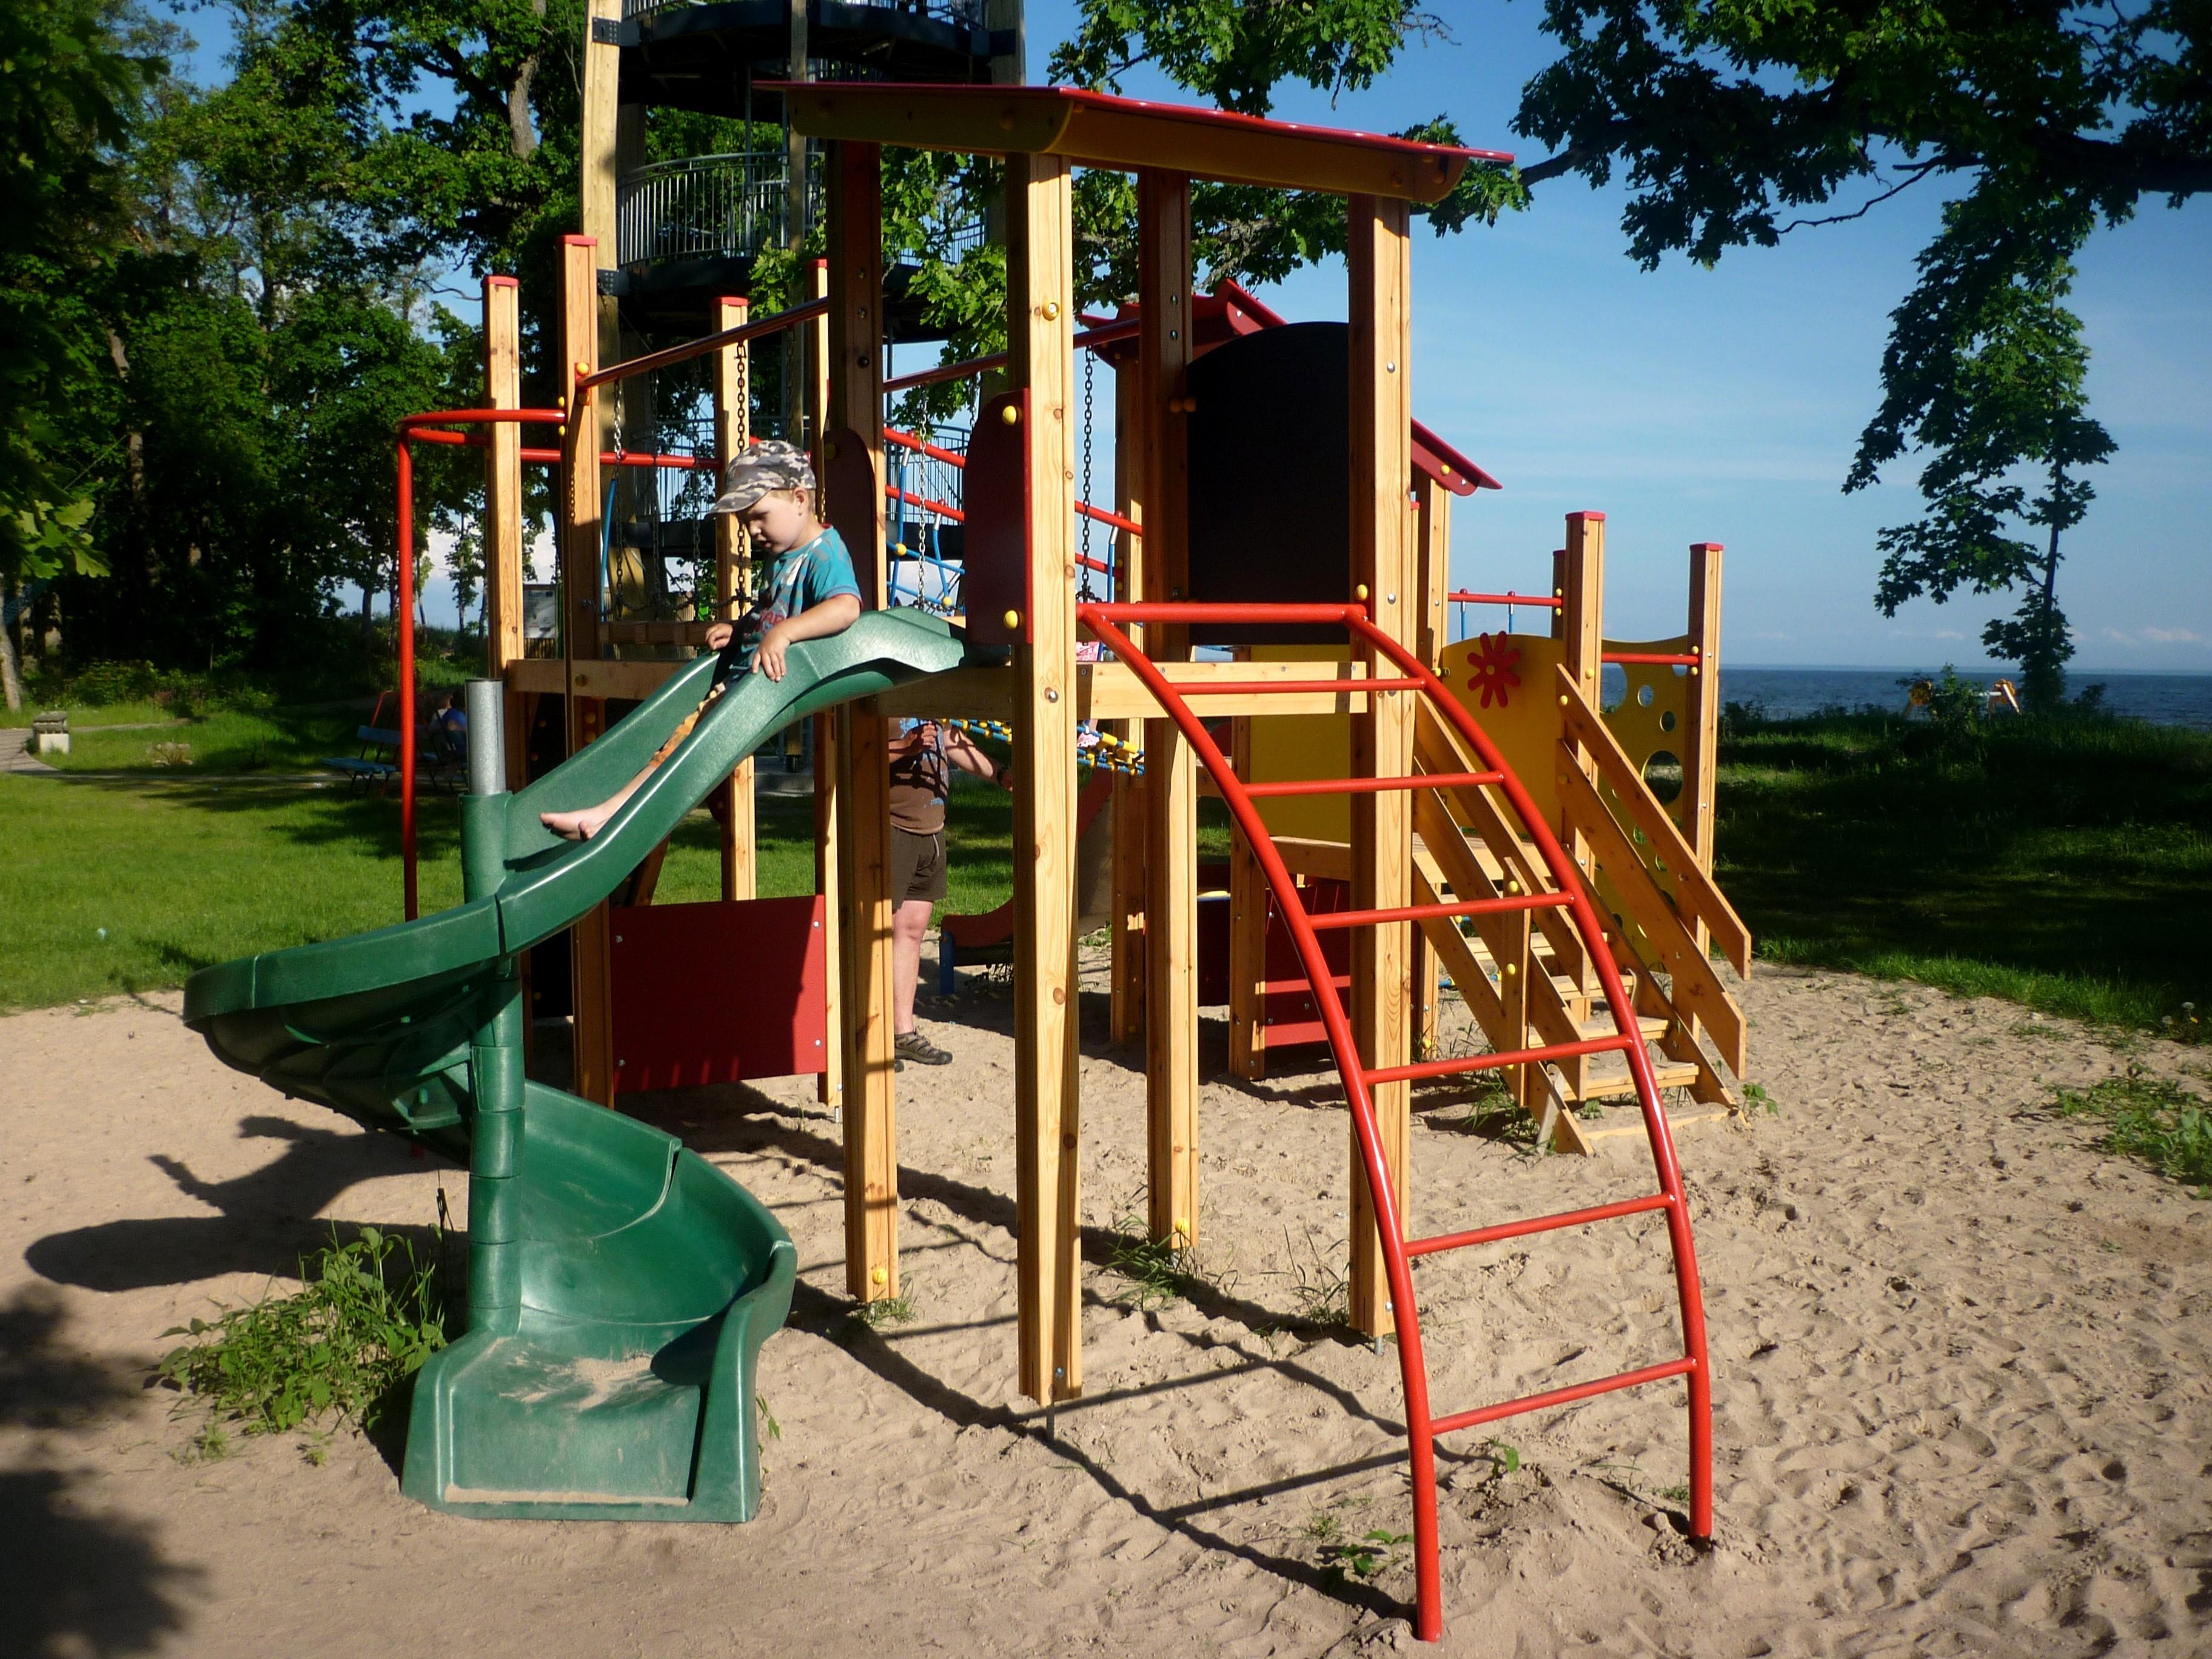 Children’s playground in Valgerand